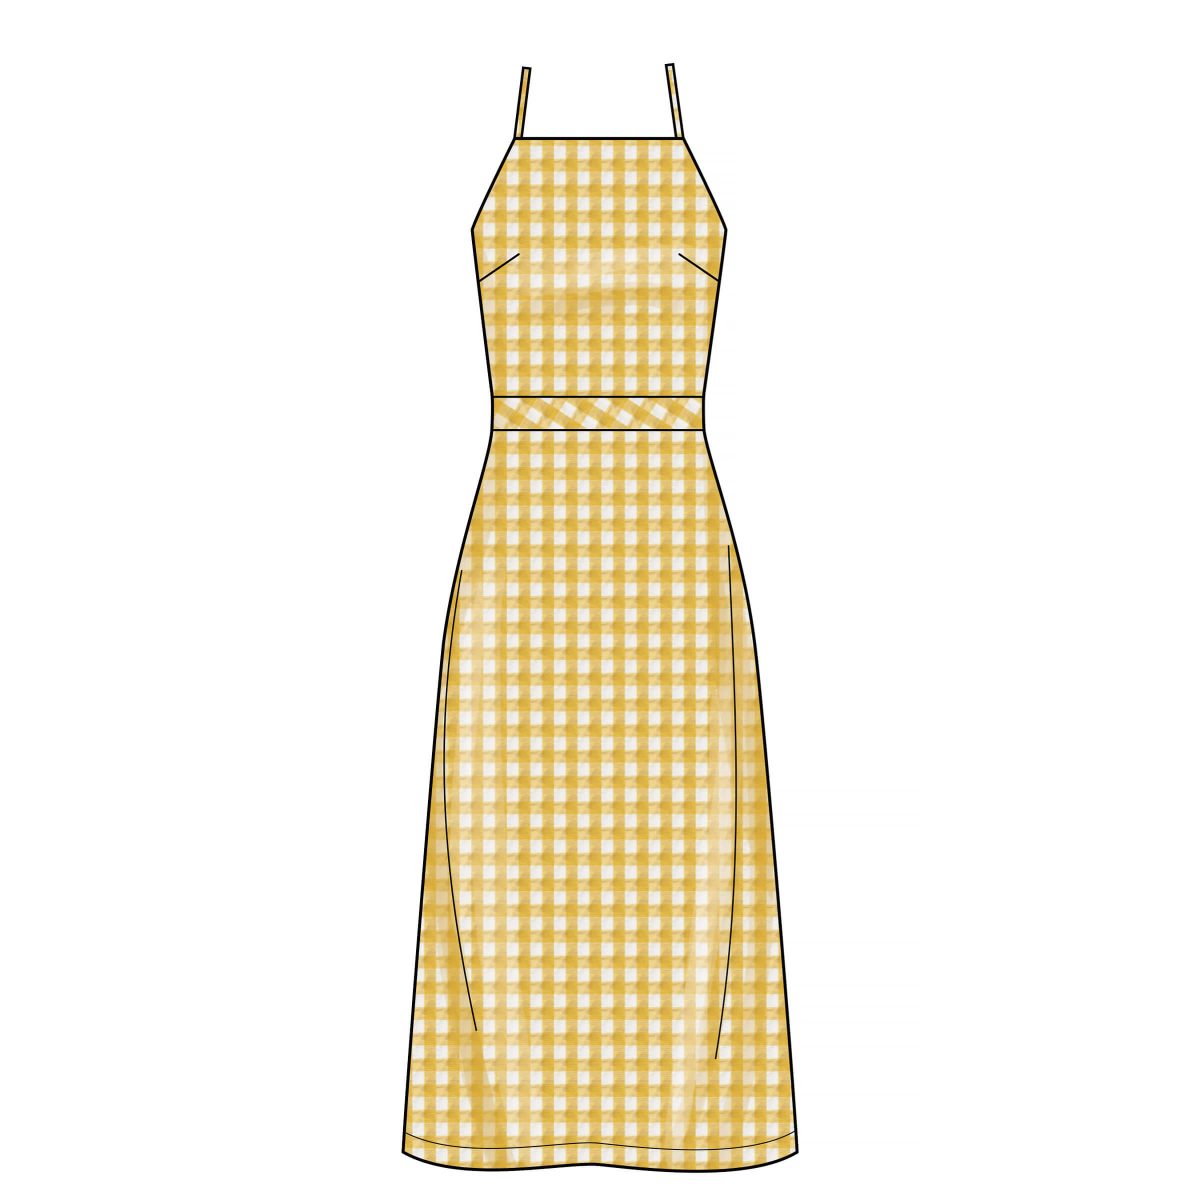 New Look Sewing Pattern N6666 Misses' Dress